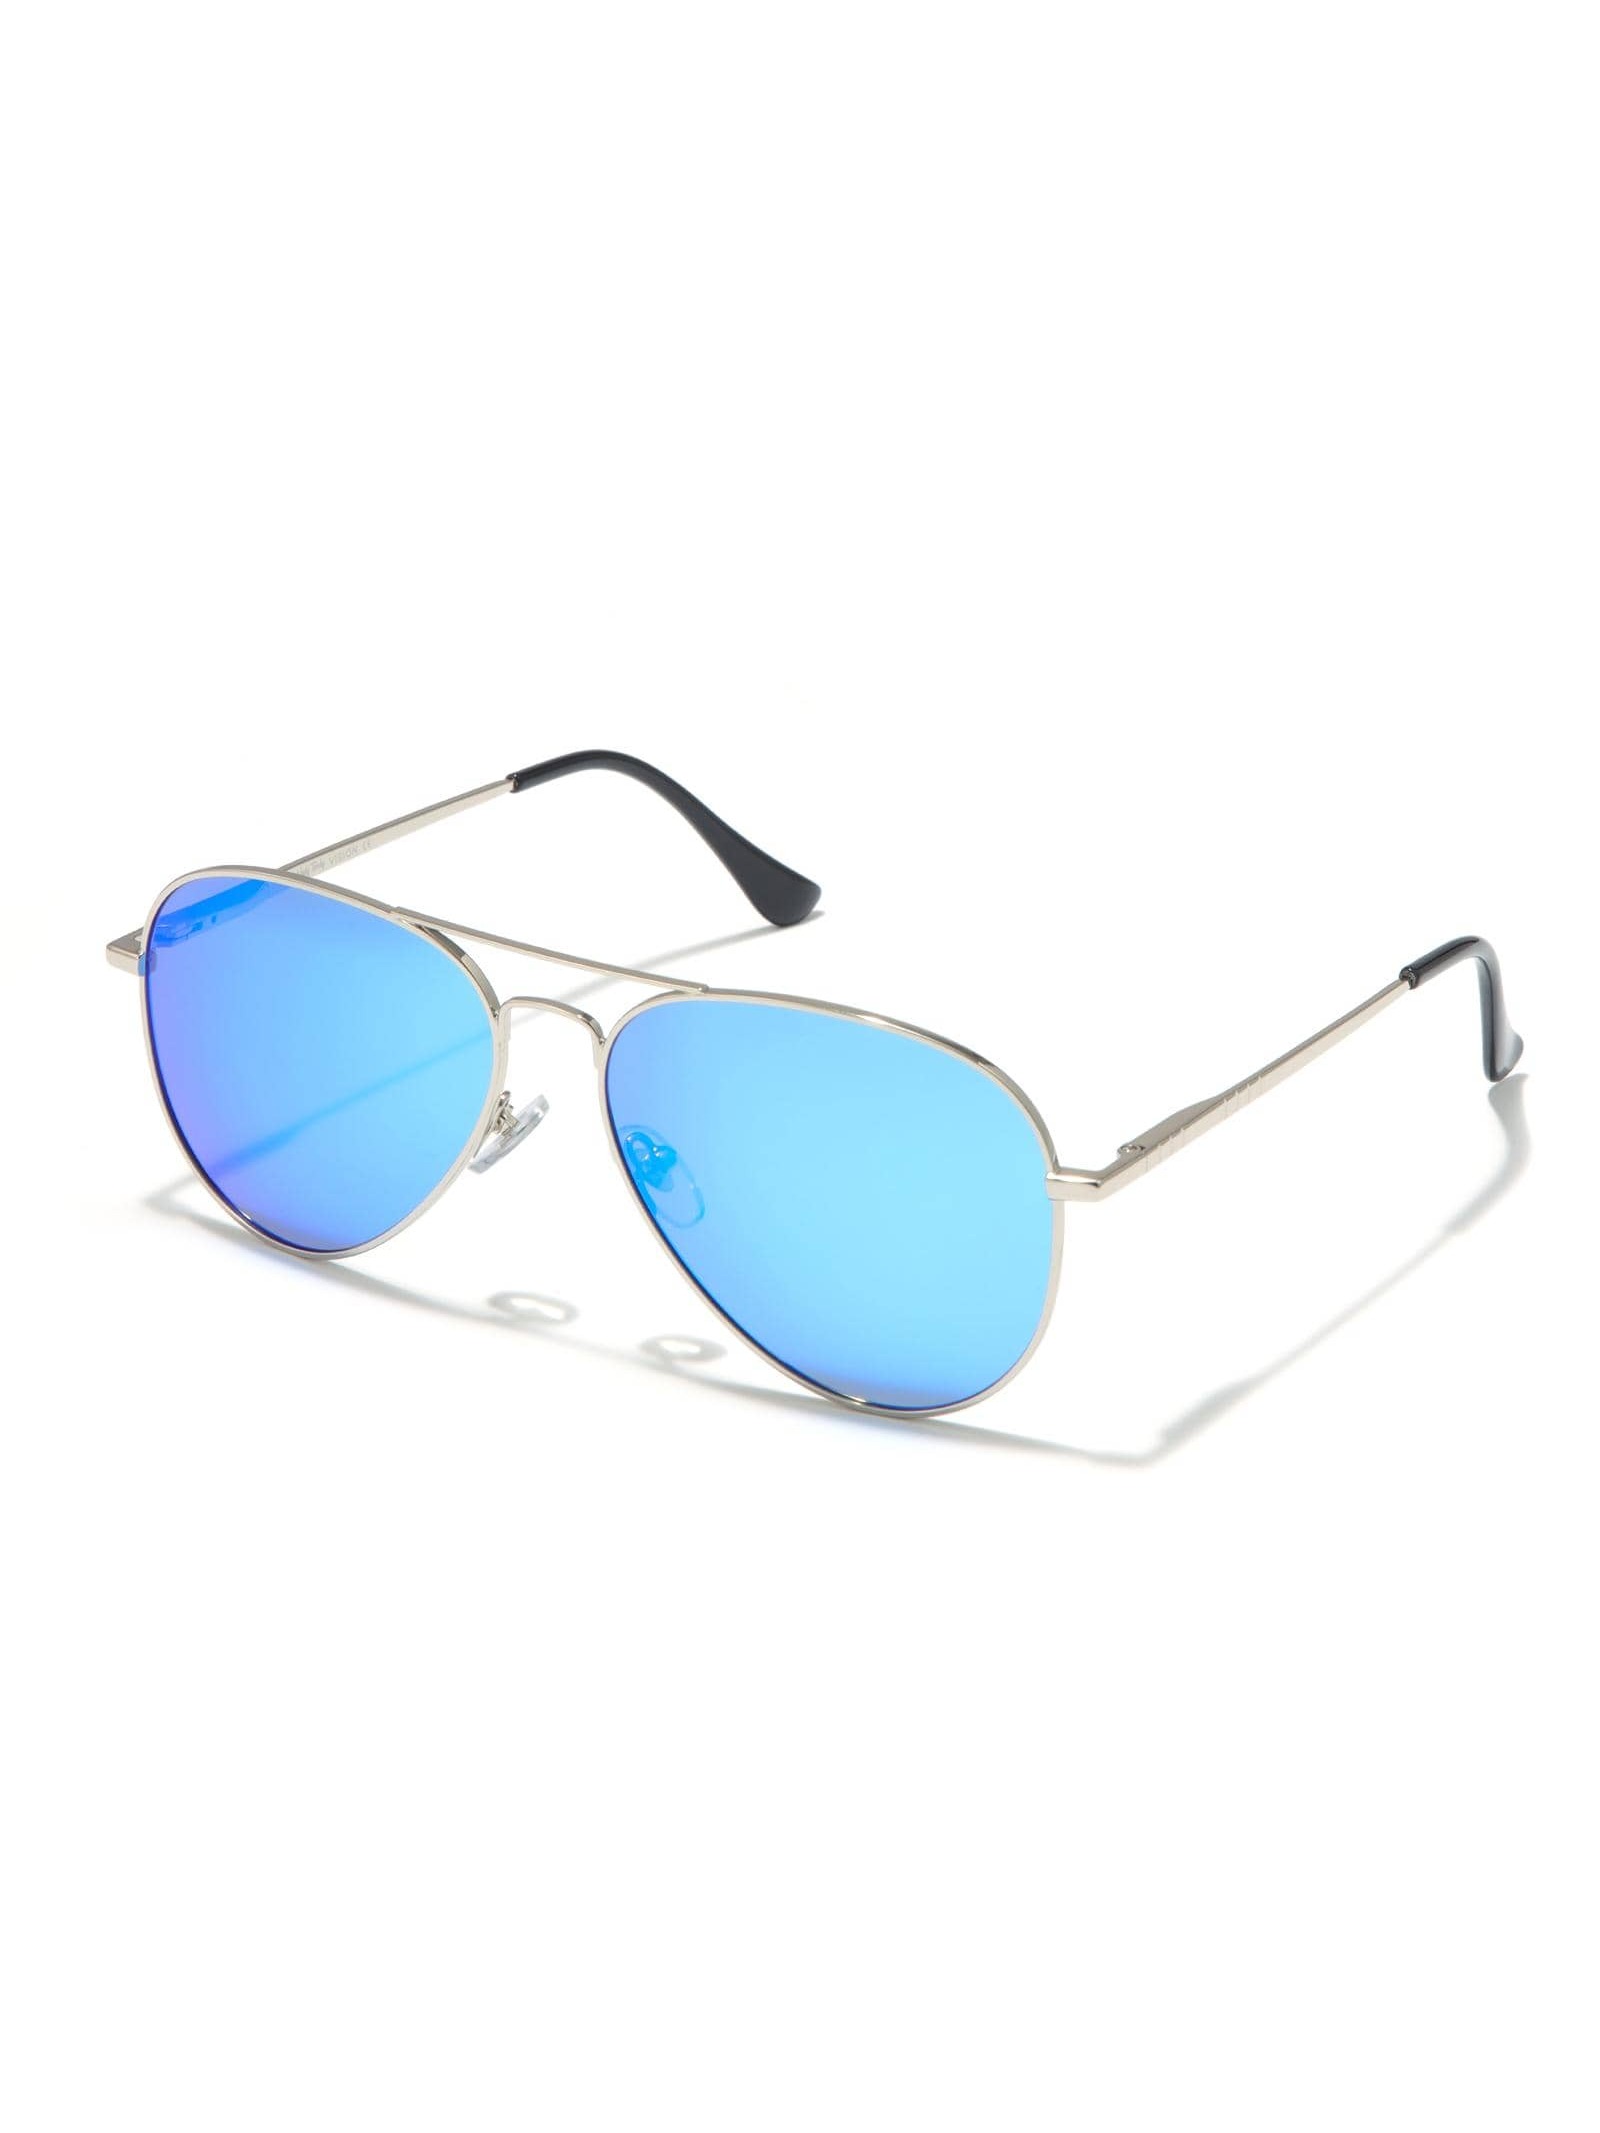 Солнцезащитные очки-авиаторы Veda Tinda для женщин и мужчин солнцезащитные очки invu авиаторы оправа металл градиентные для женщин голубой